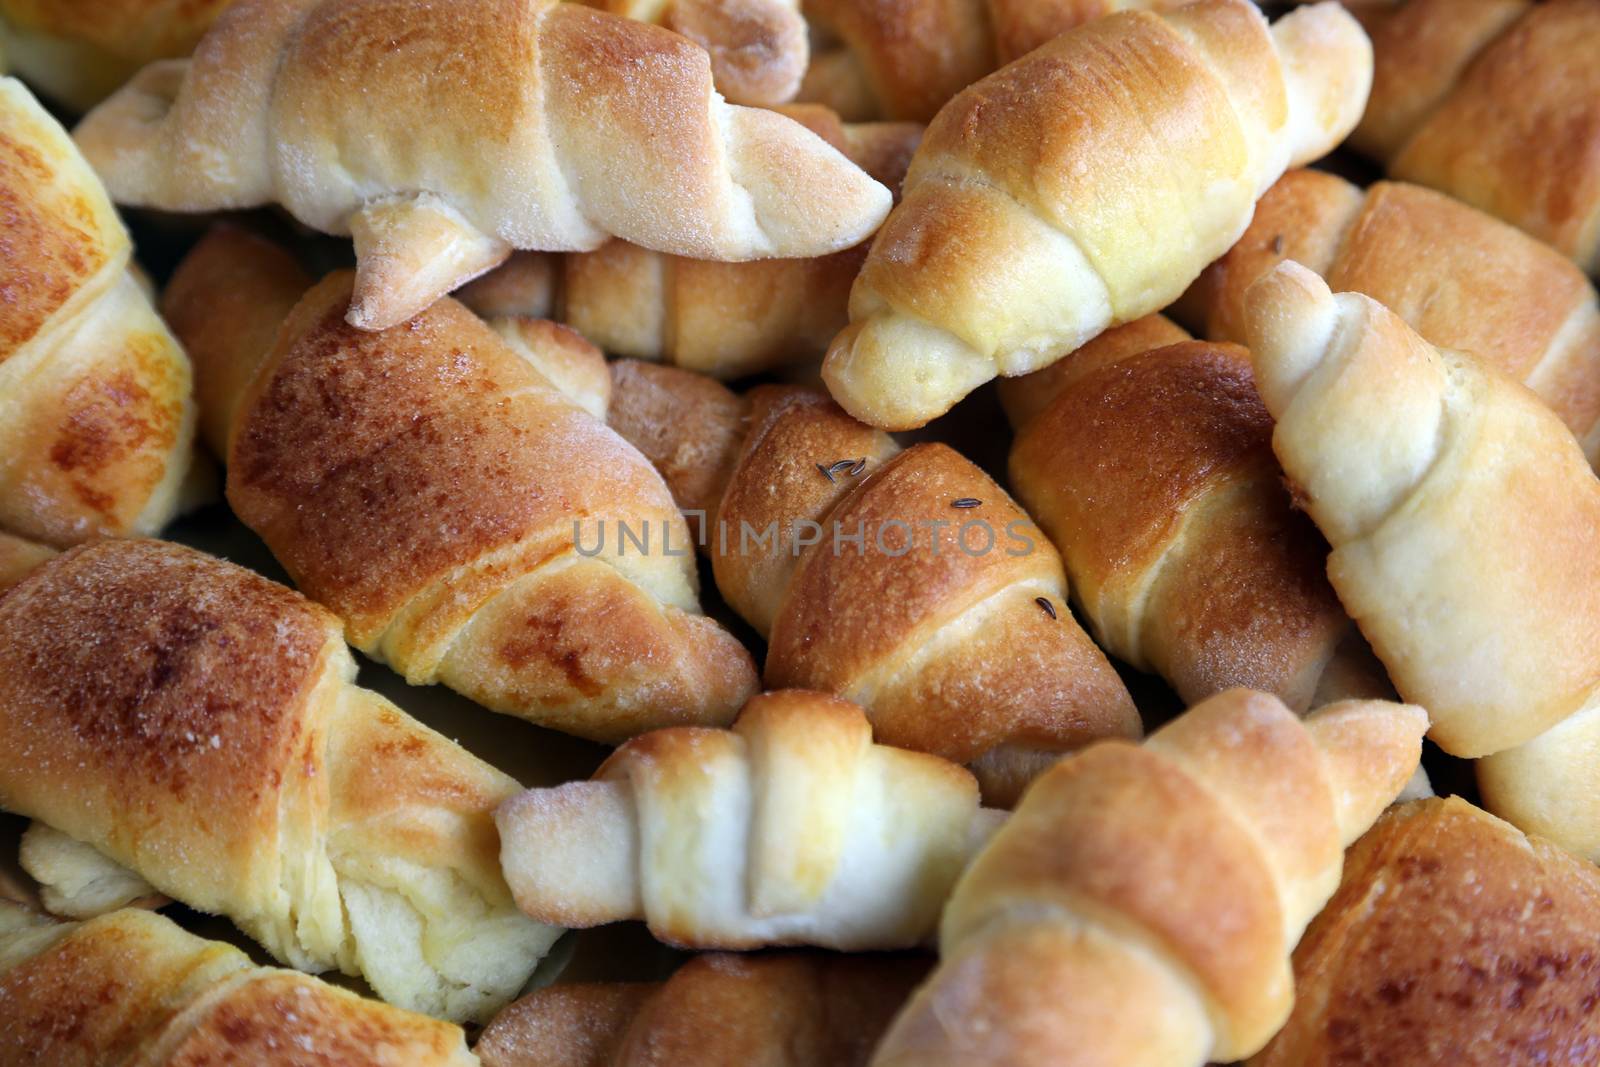 Bread rolls by atlas